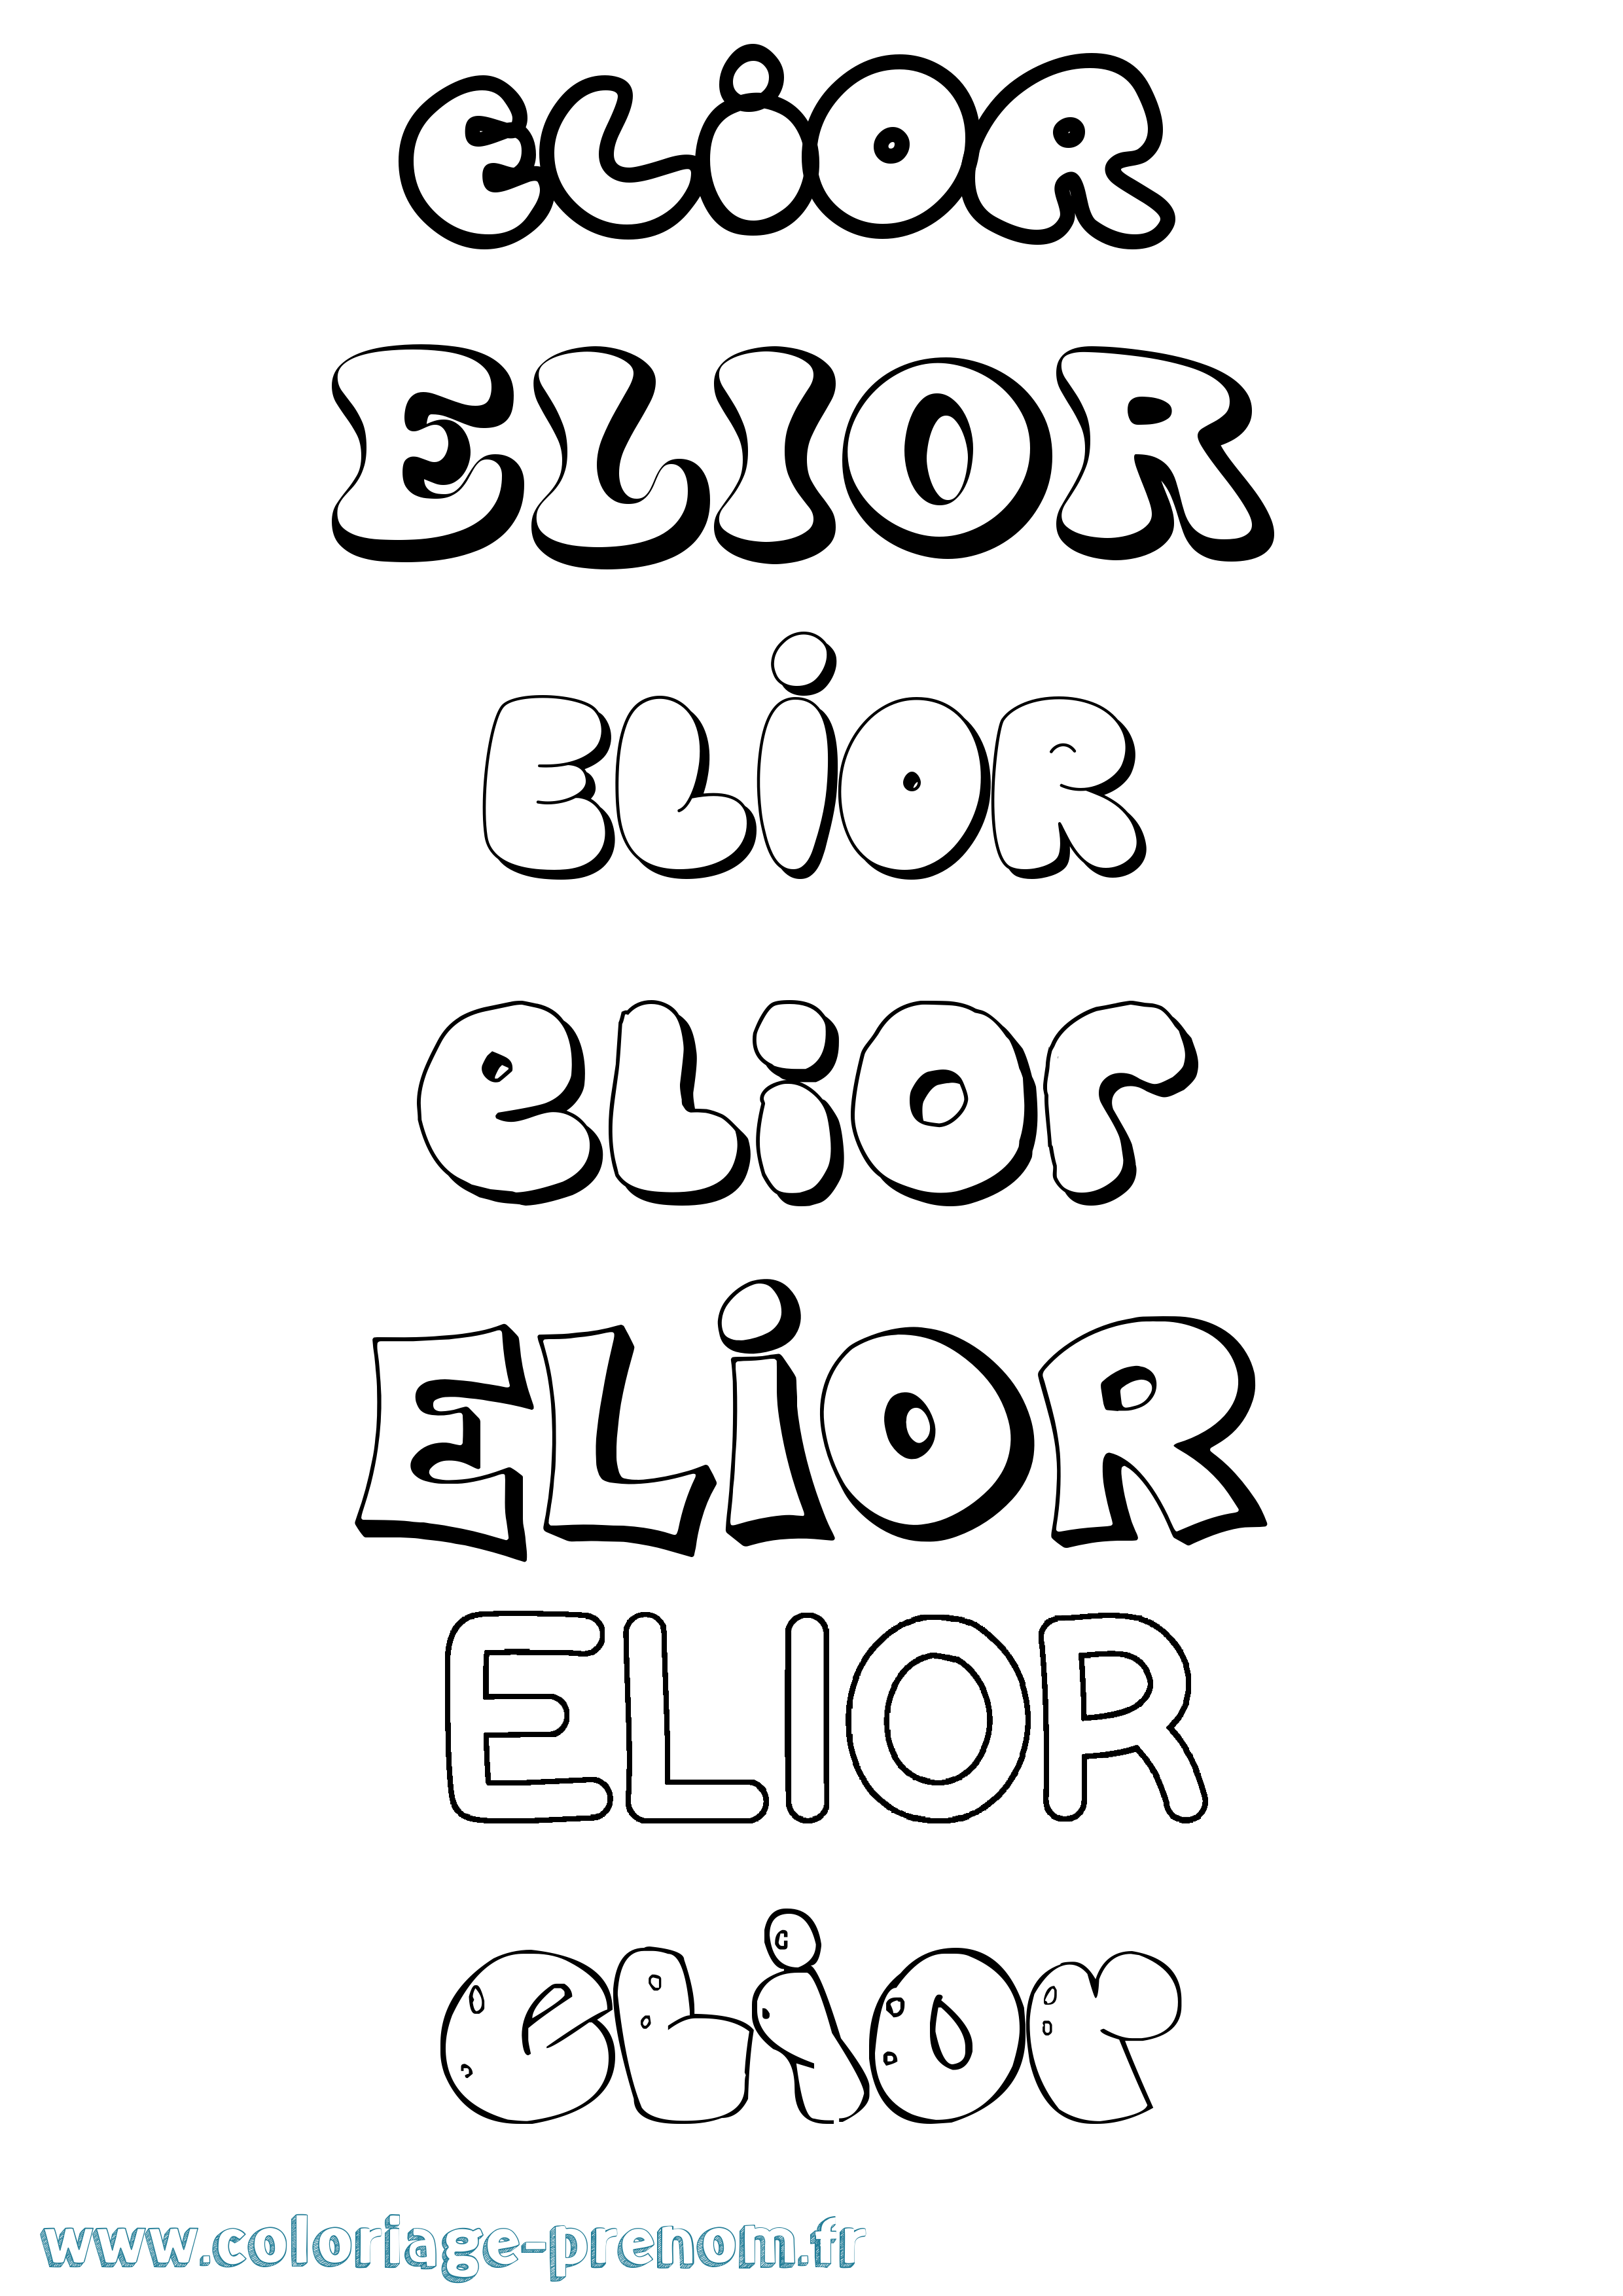 Coloriage prénom Elior Bubble